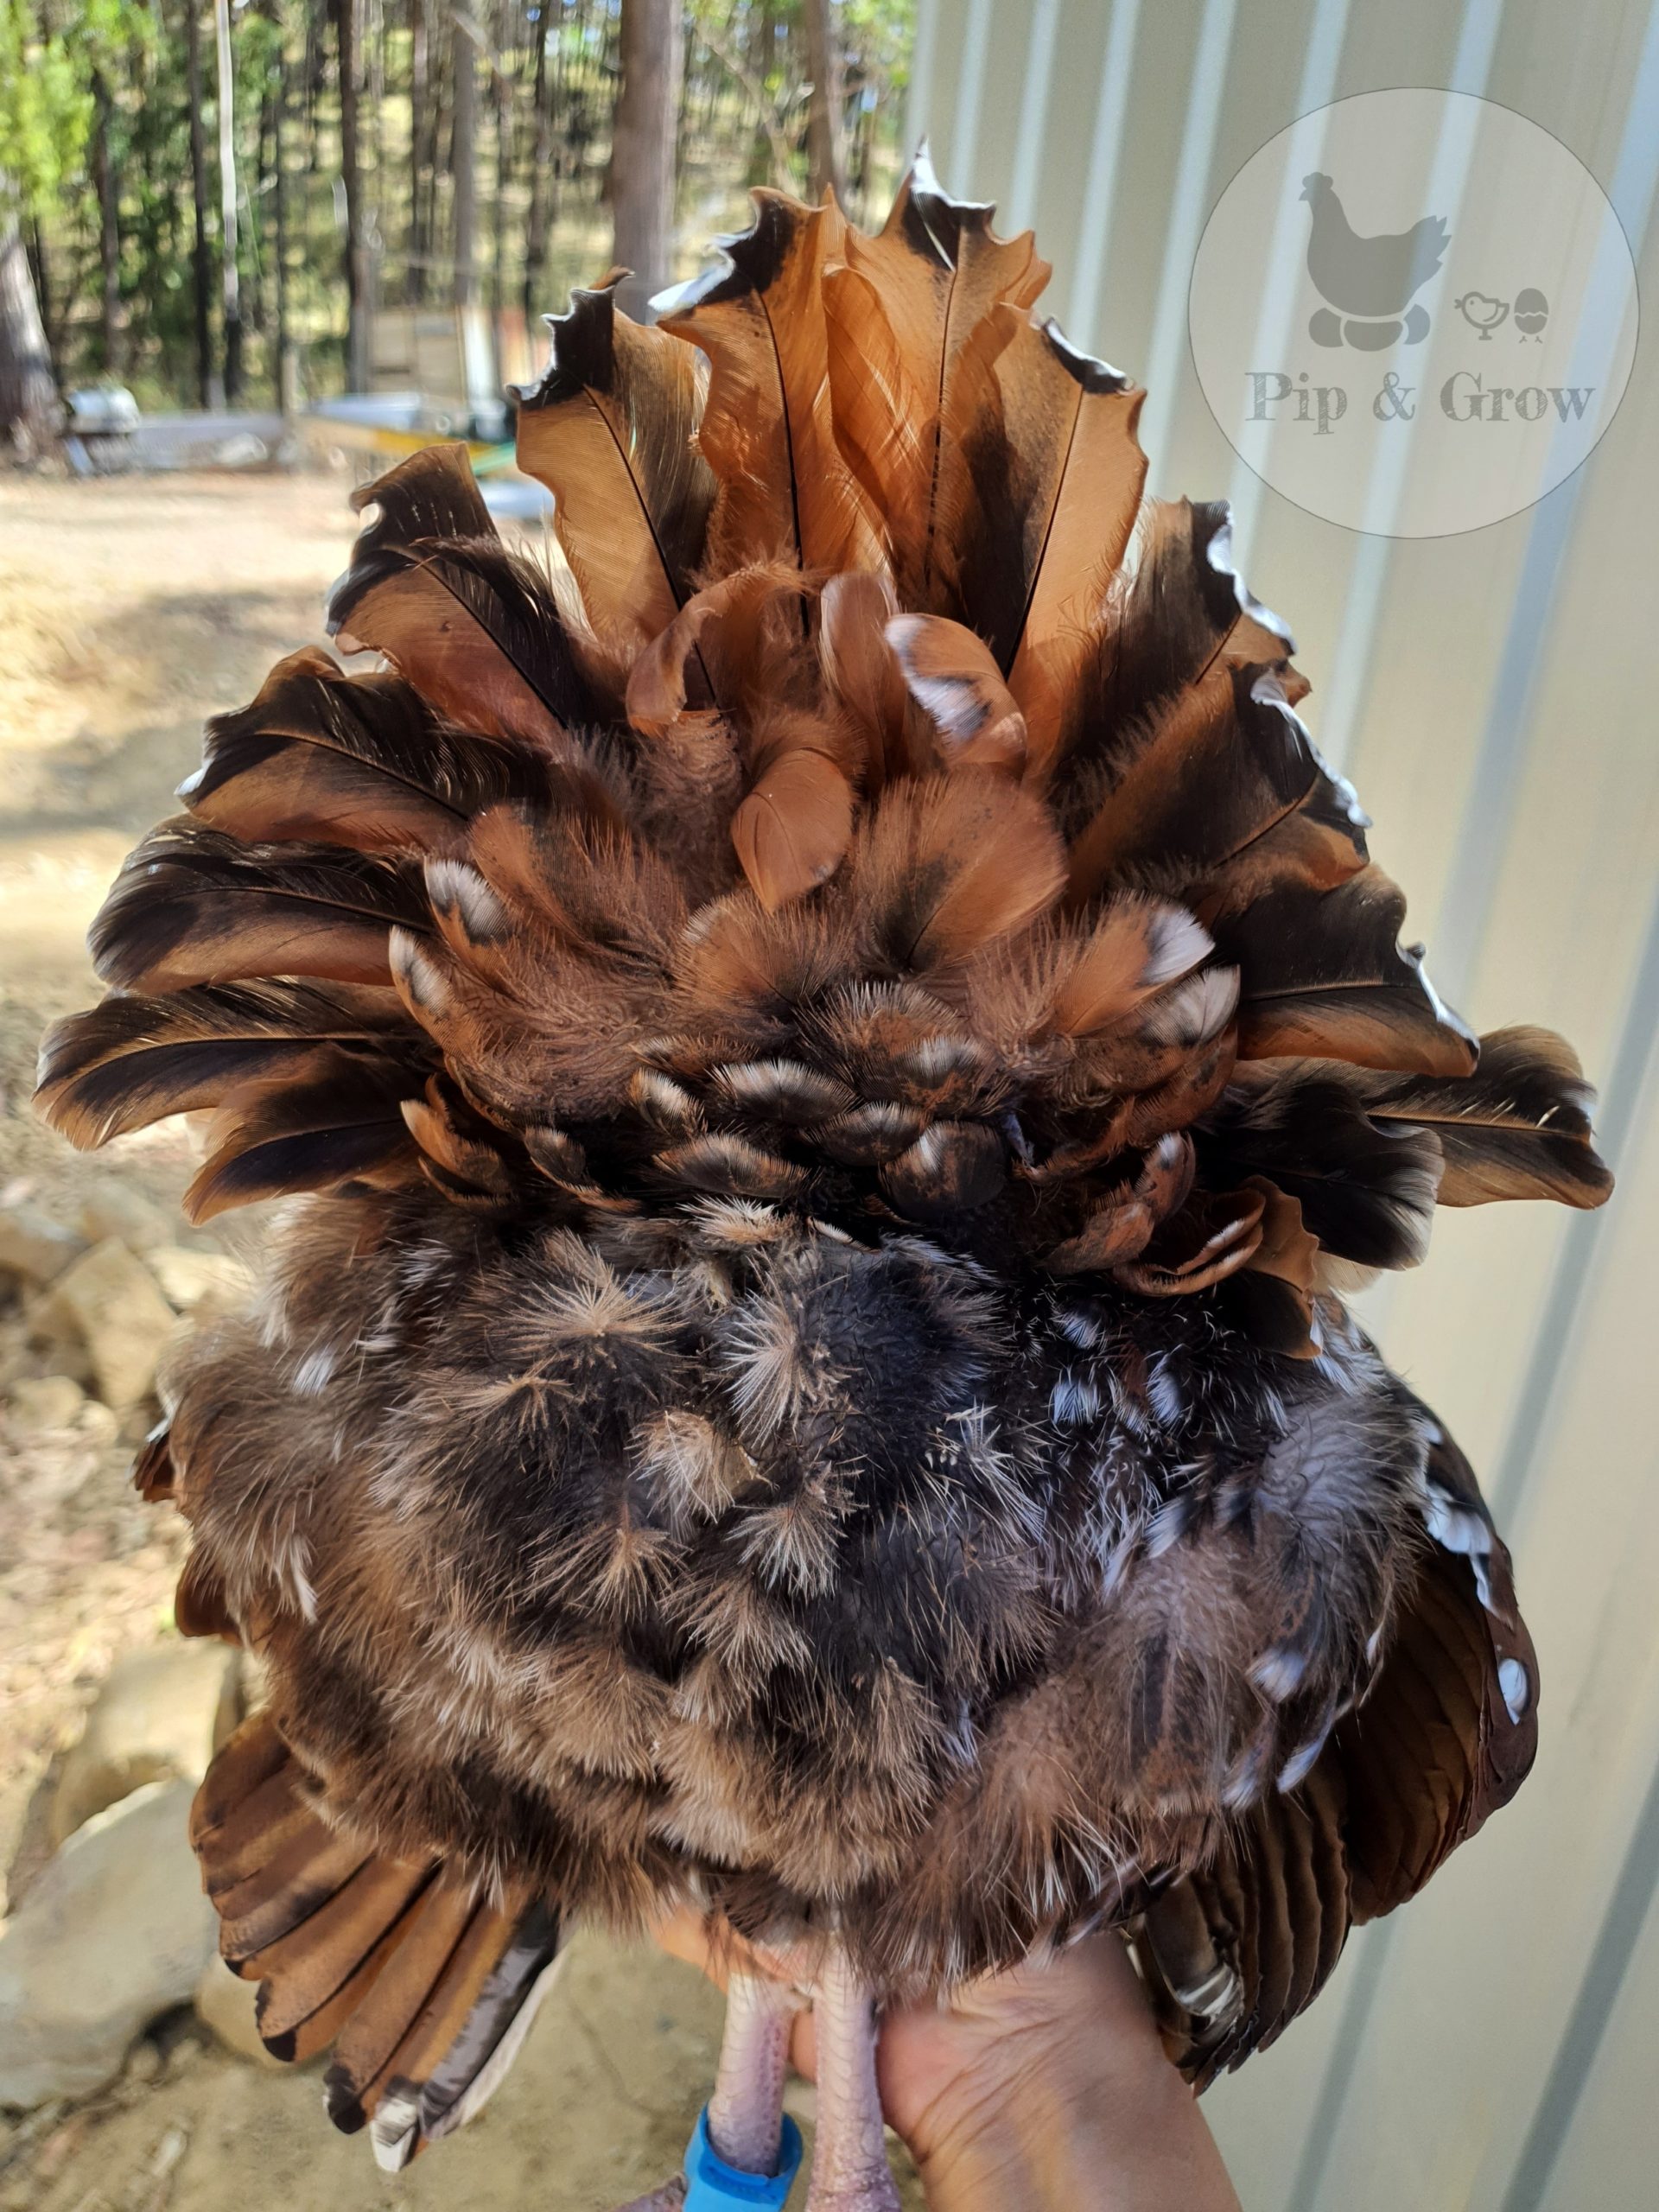 Feather Trimming Prior Breeding Season